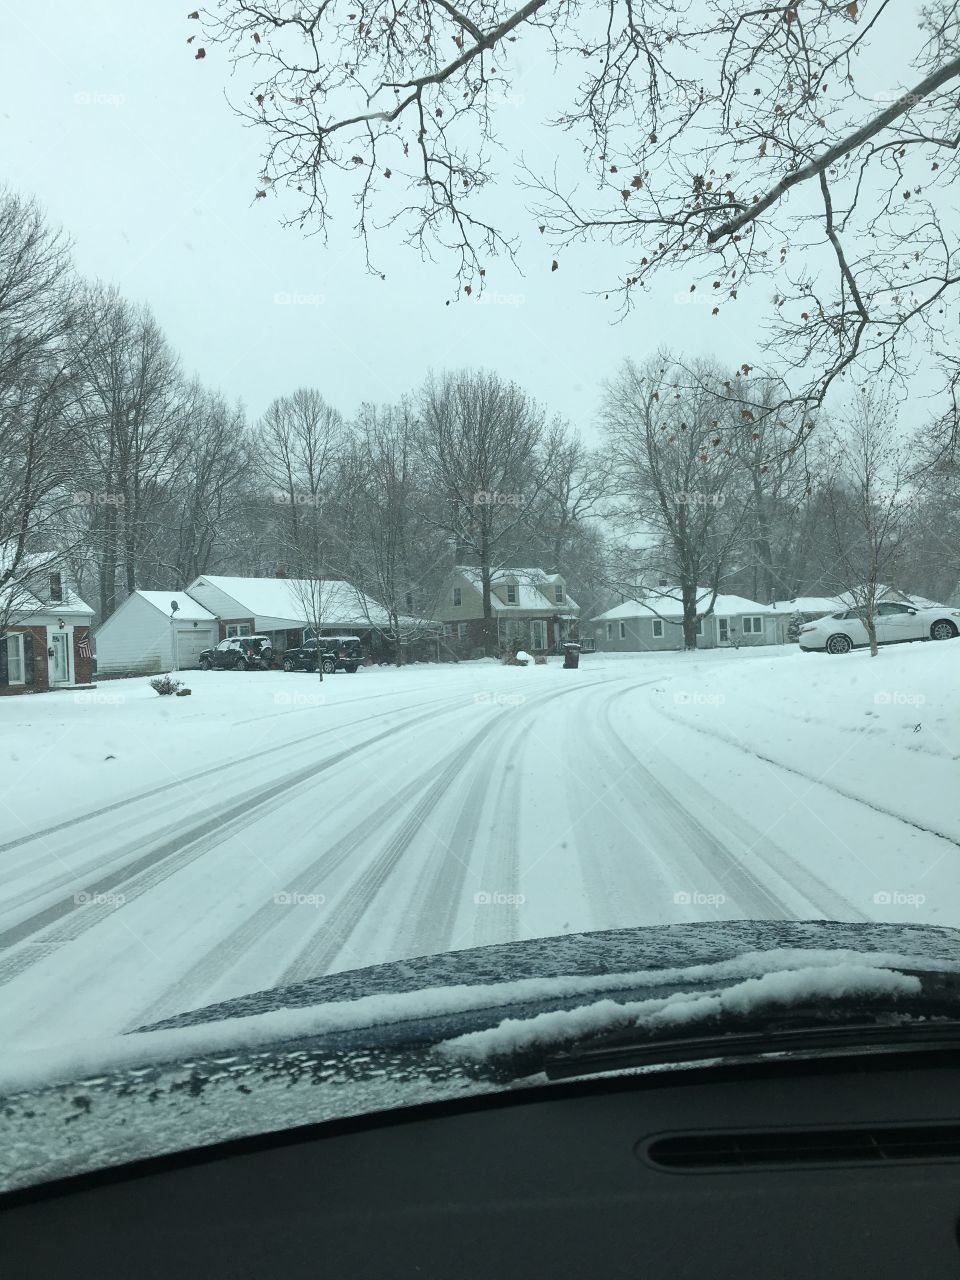 Winter in Ohio